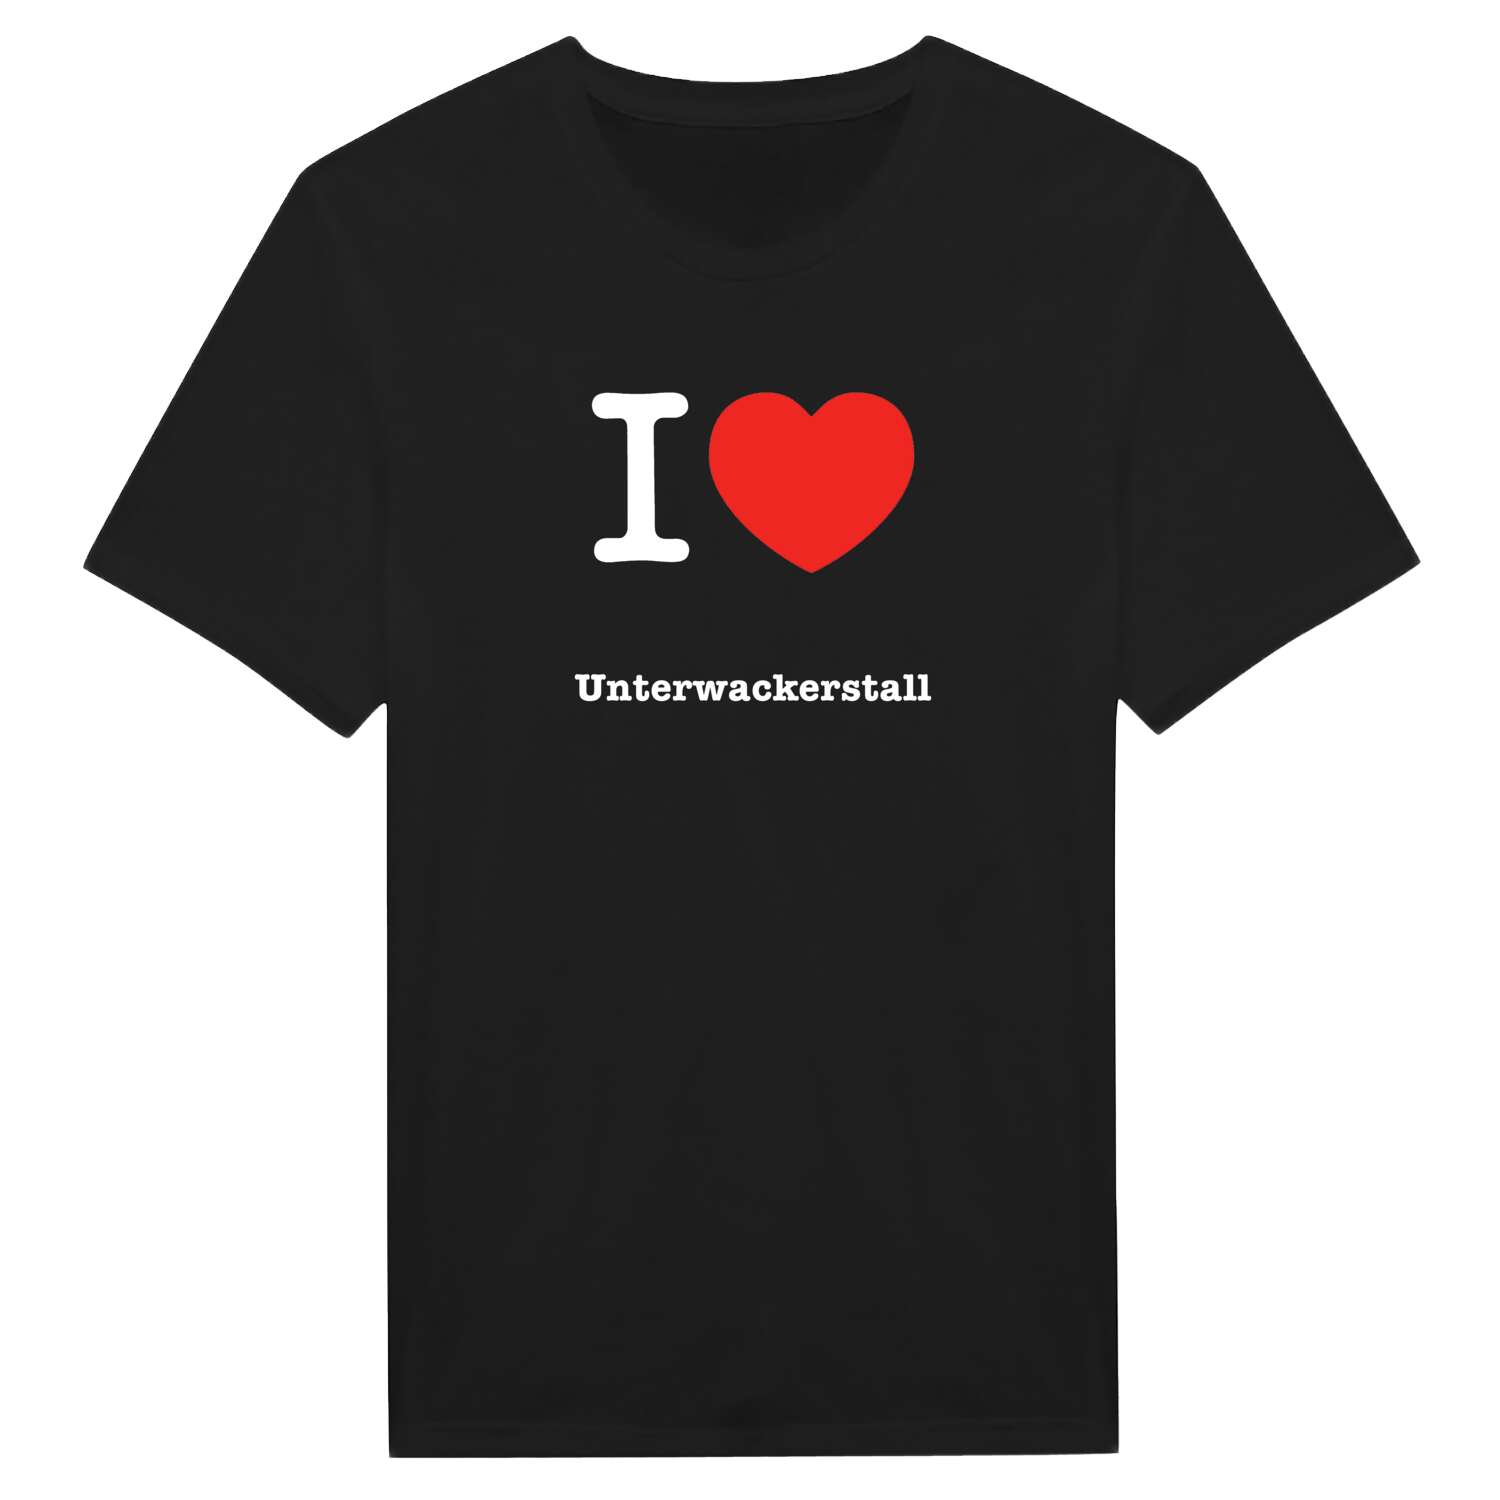 Unterwackerstall T-Shirt »I love«